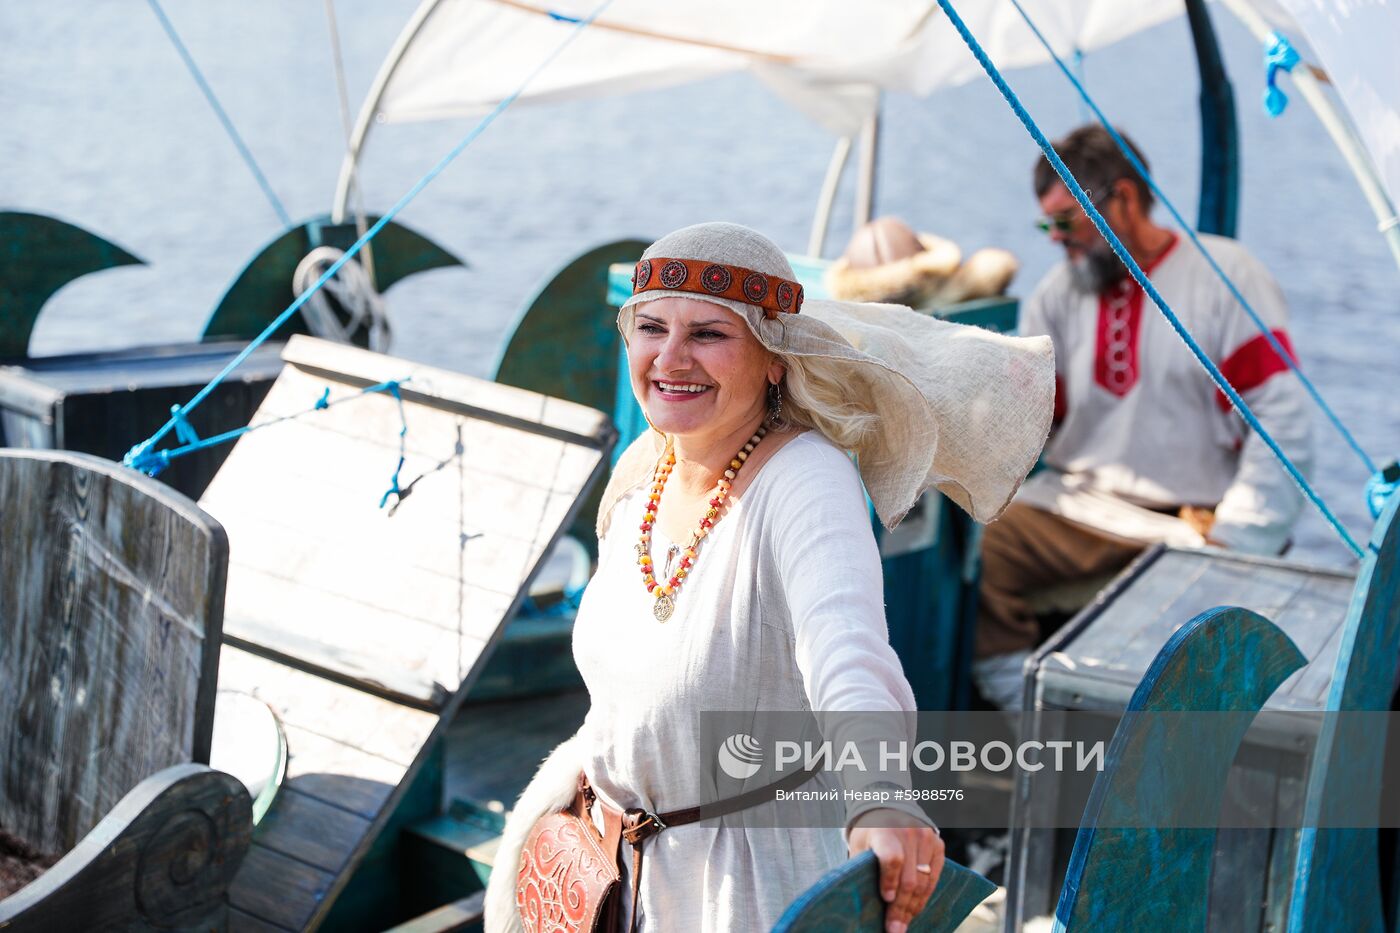 Российская яхта в стиле древнерусской ладьи "Змей Горыныч"